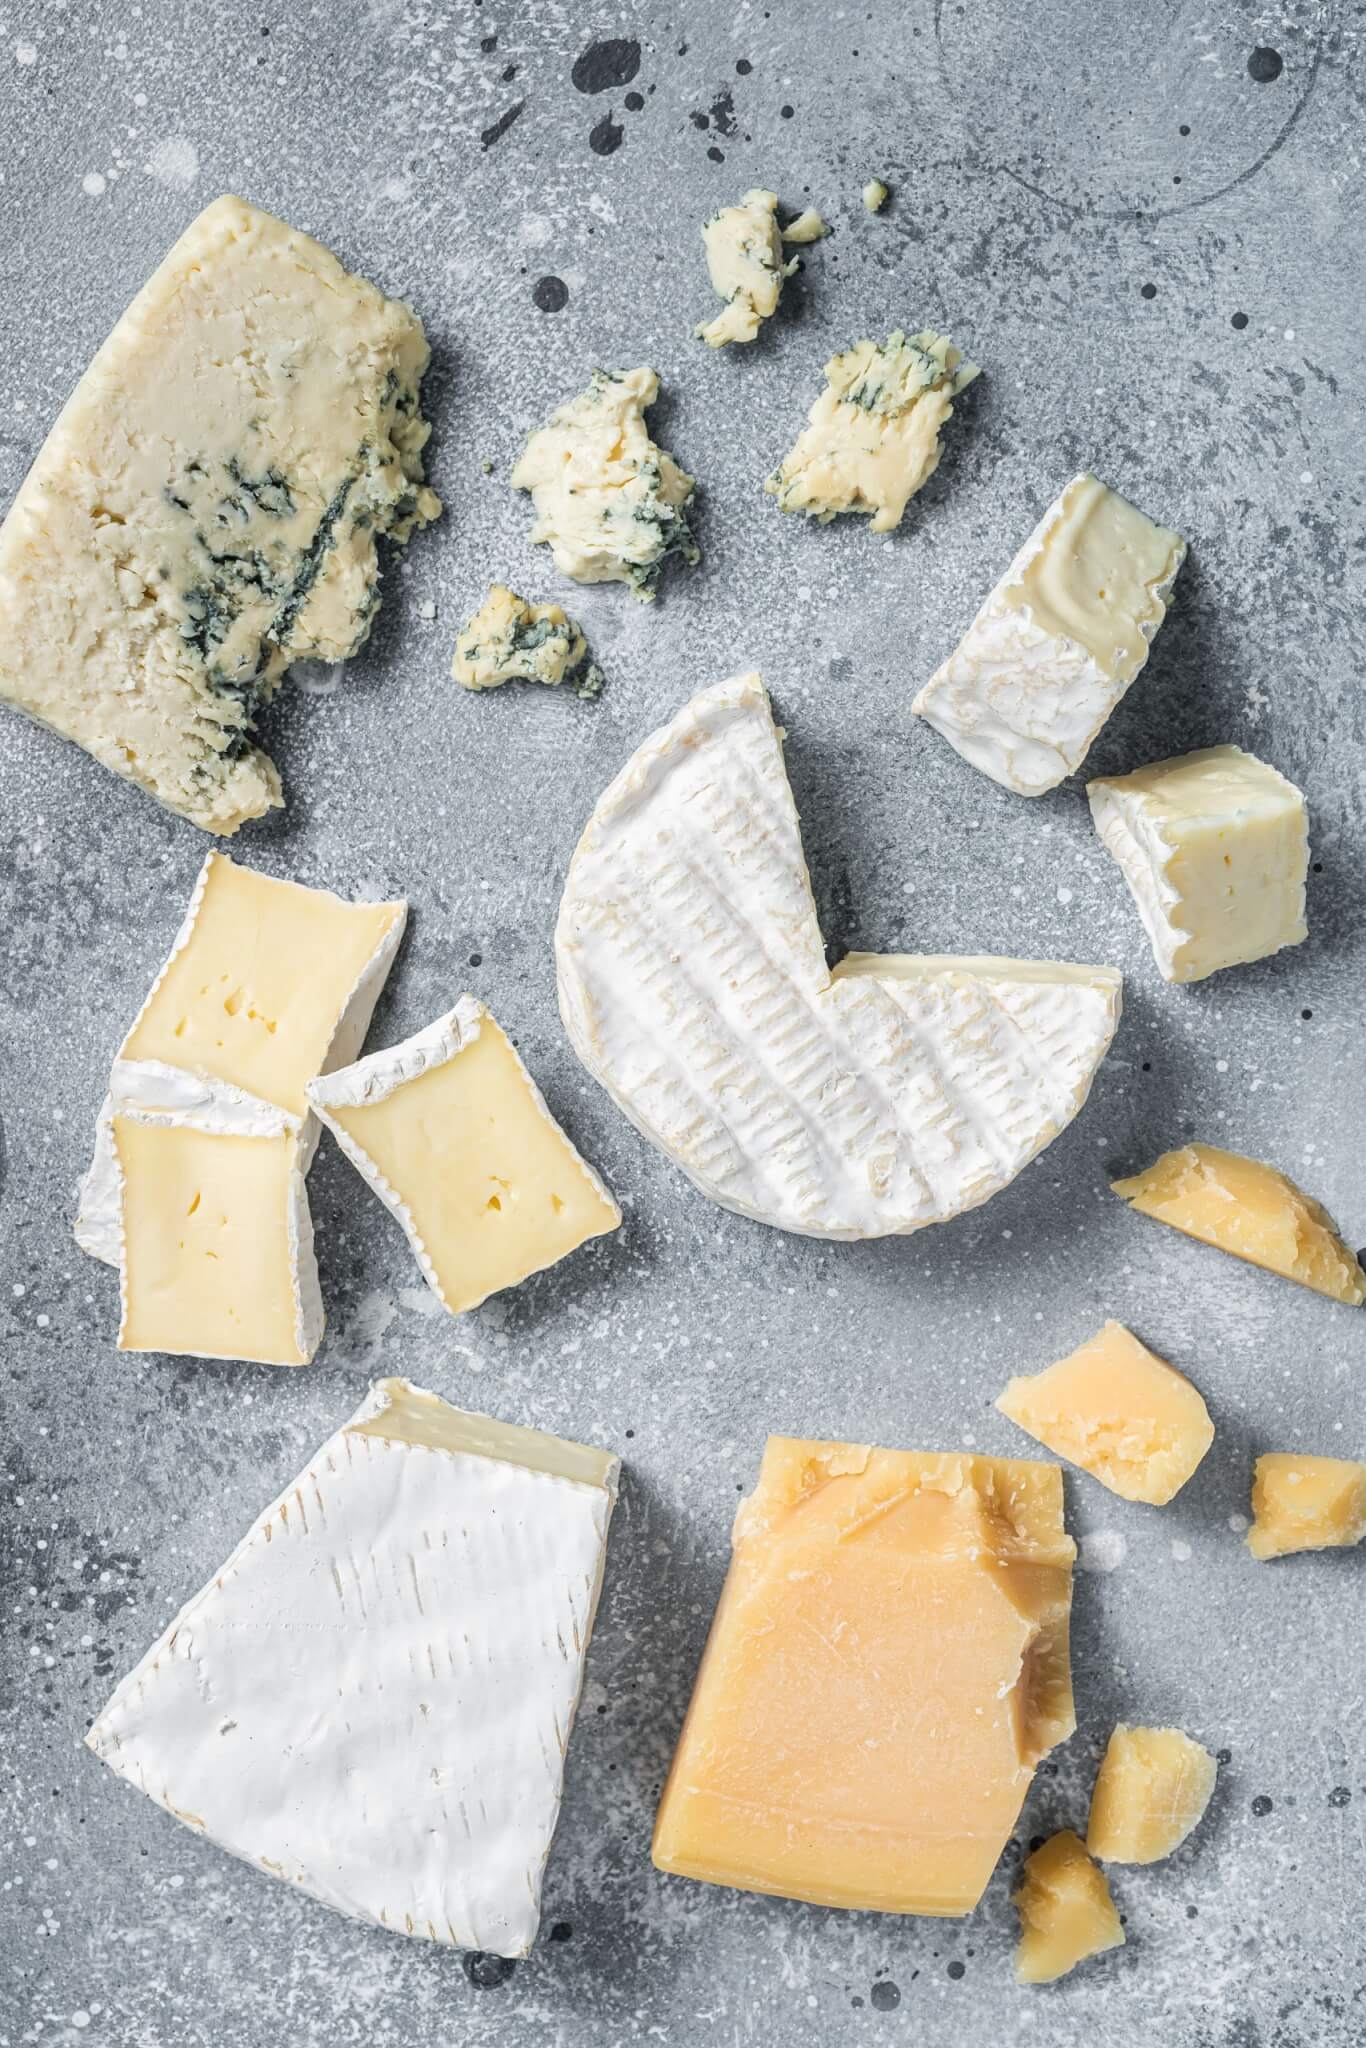 5. Queijo O queijo é uma boa fonte de vitamina B2 e minerais que, quando consumido com moderação, pode ajudar a fortalecer os ossos e os dentes, bem como favorecer a construção e a reparação dos tecidos musculares. Reprodução: EdiCase